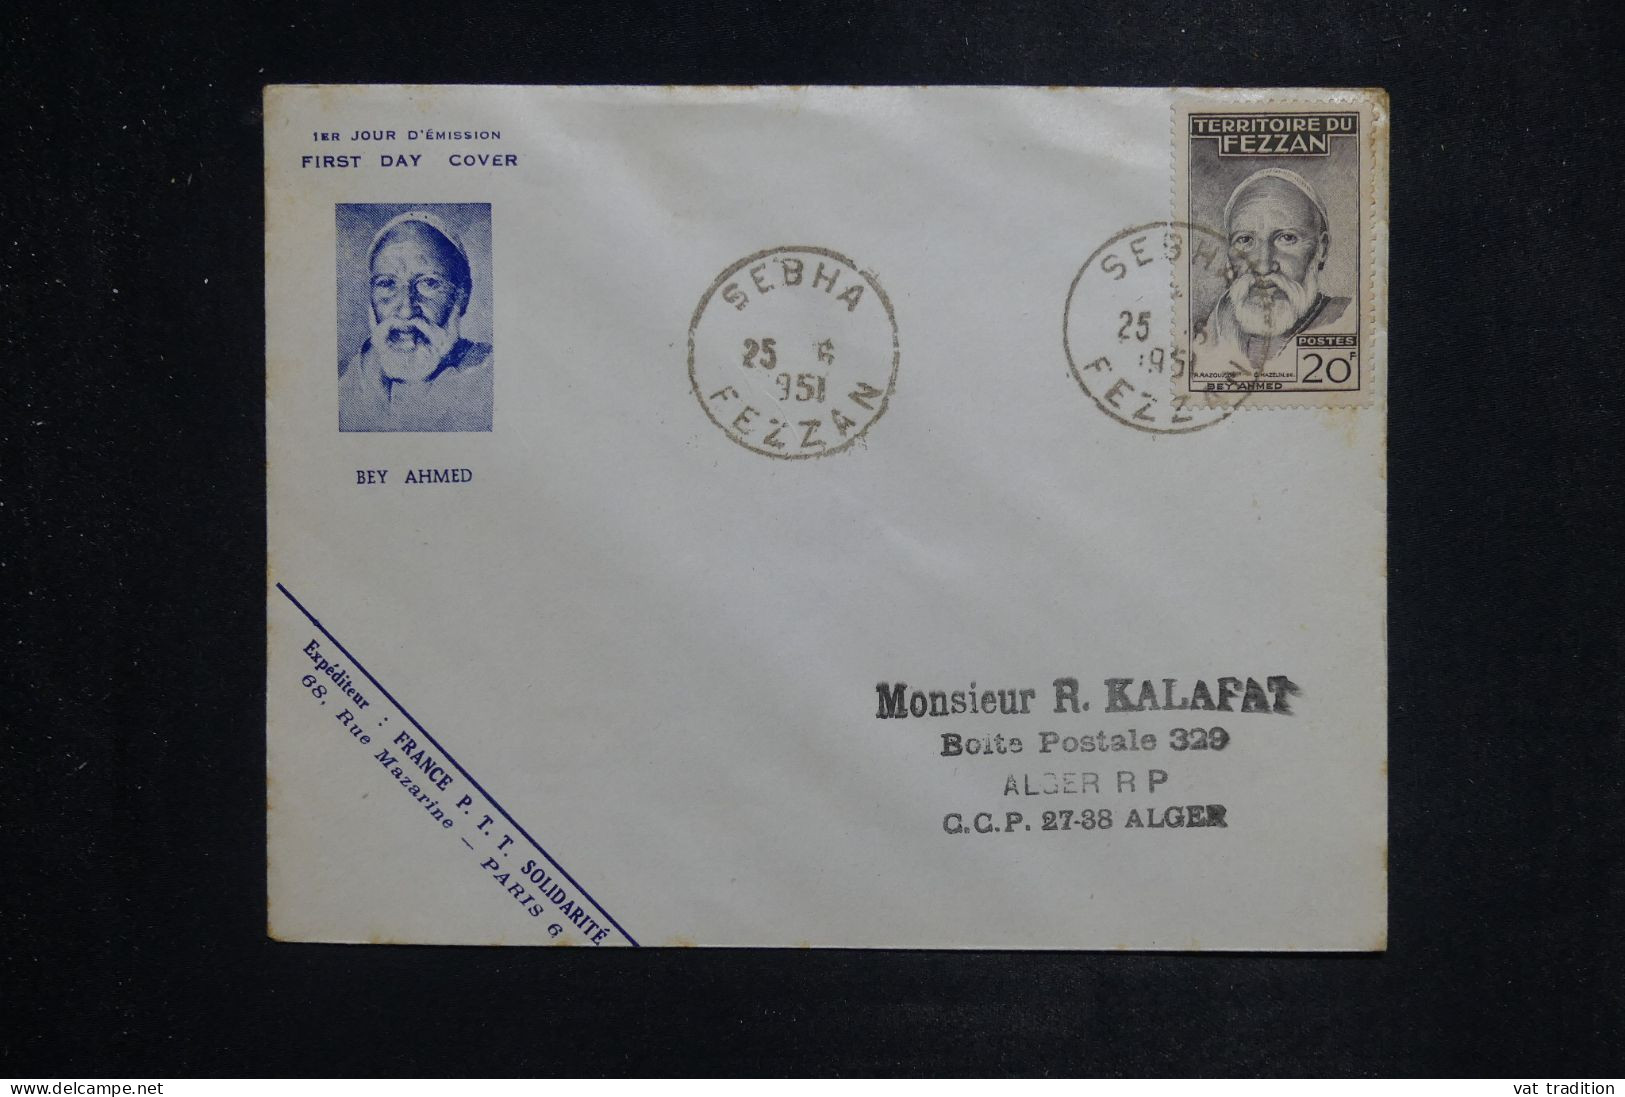 FEZZAN  - Enveloppe FDC En 1951 - Beyahmed - L 151104 - Lettres & Documents